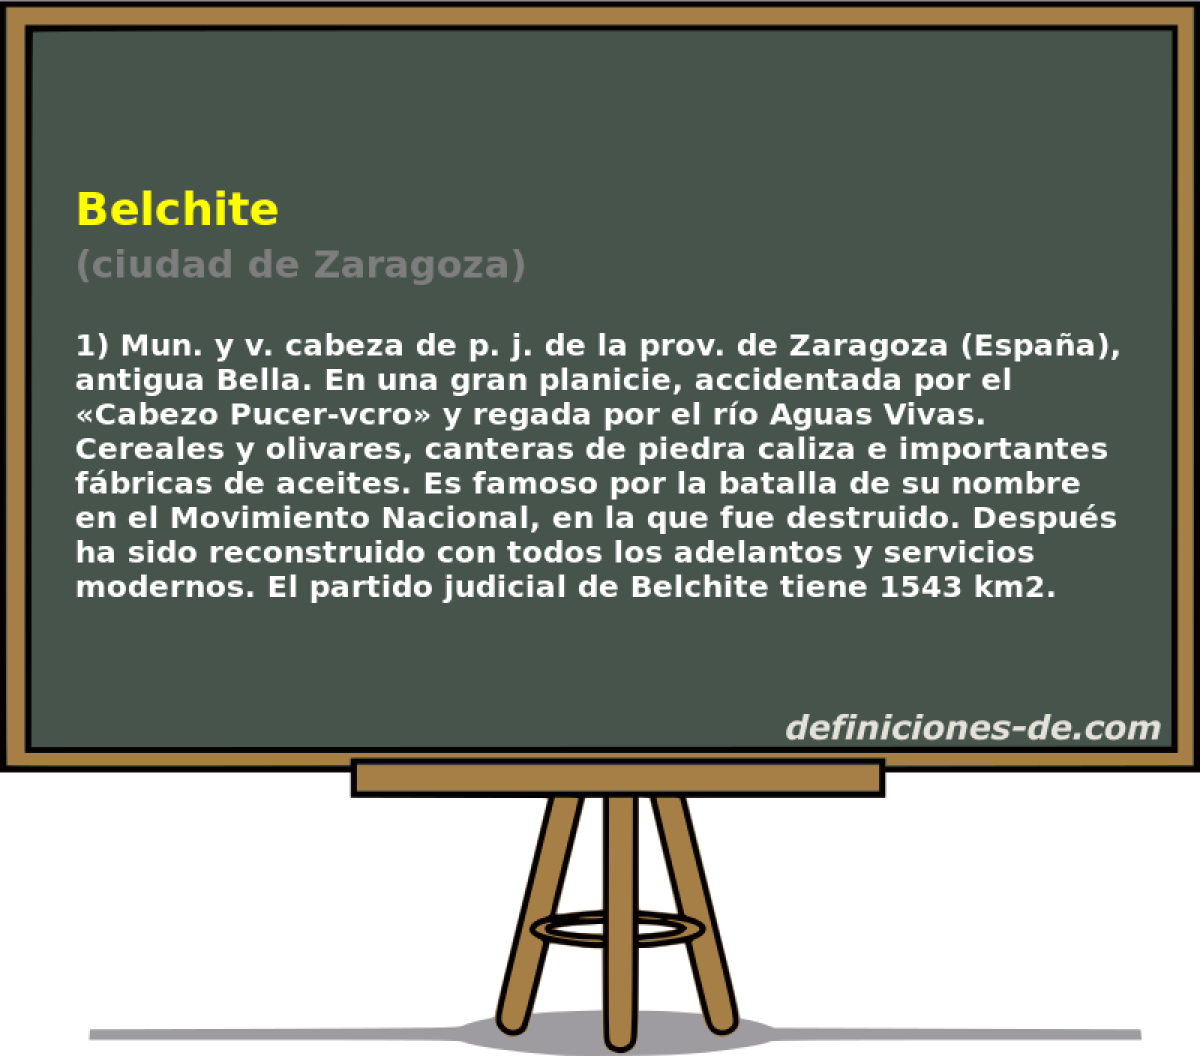 Belchite (ciudad de Zaragoza)